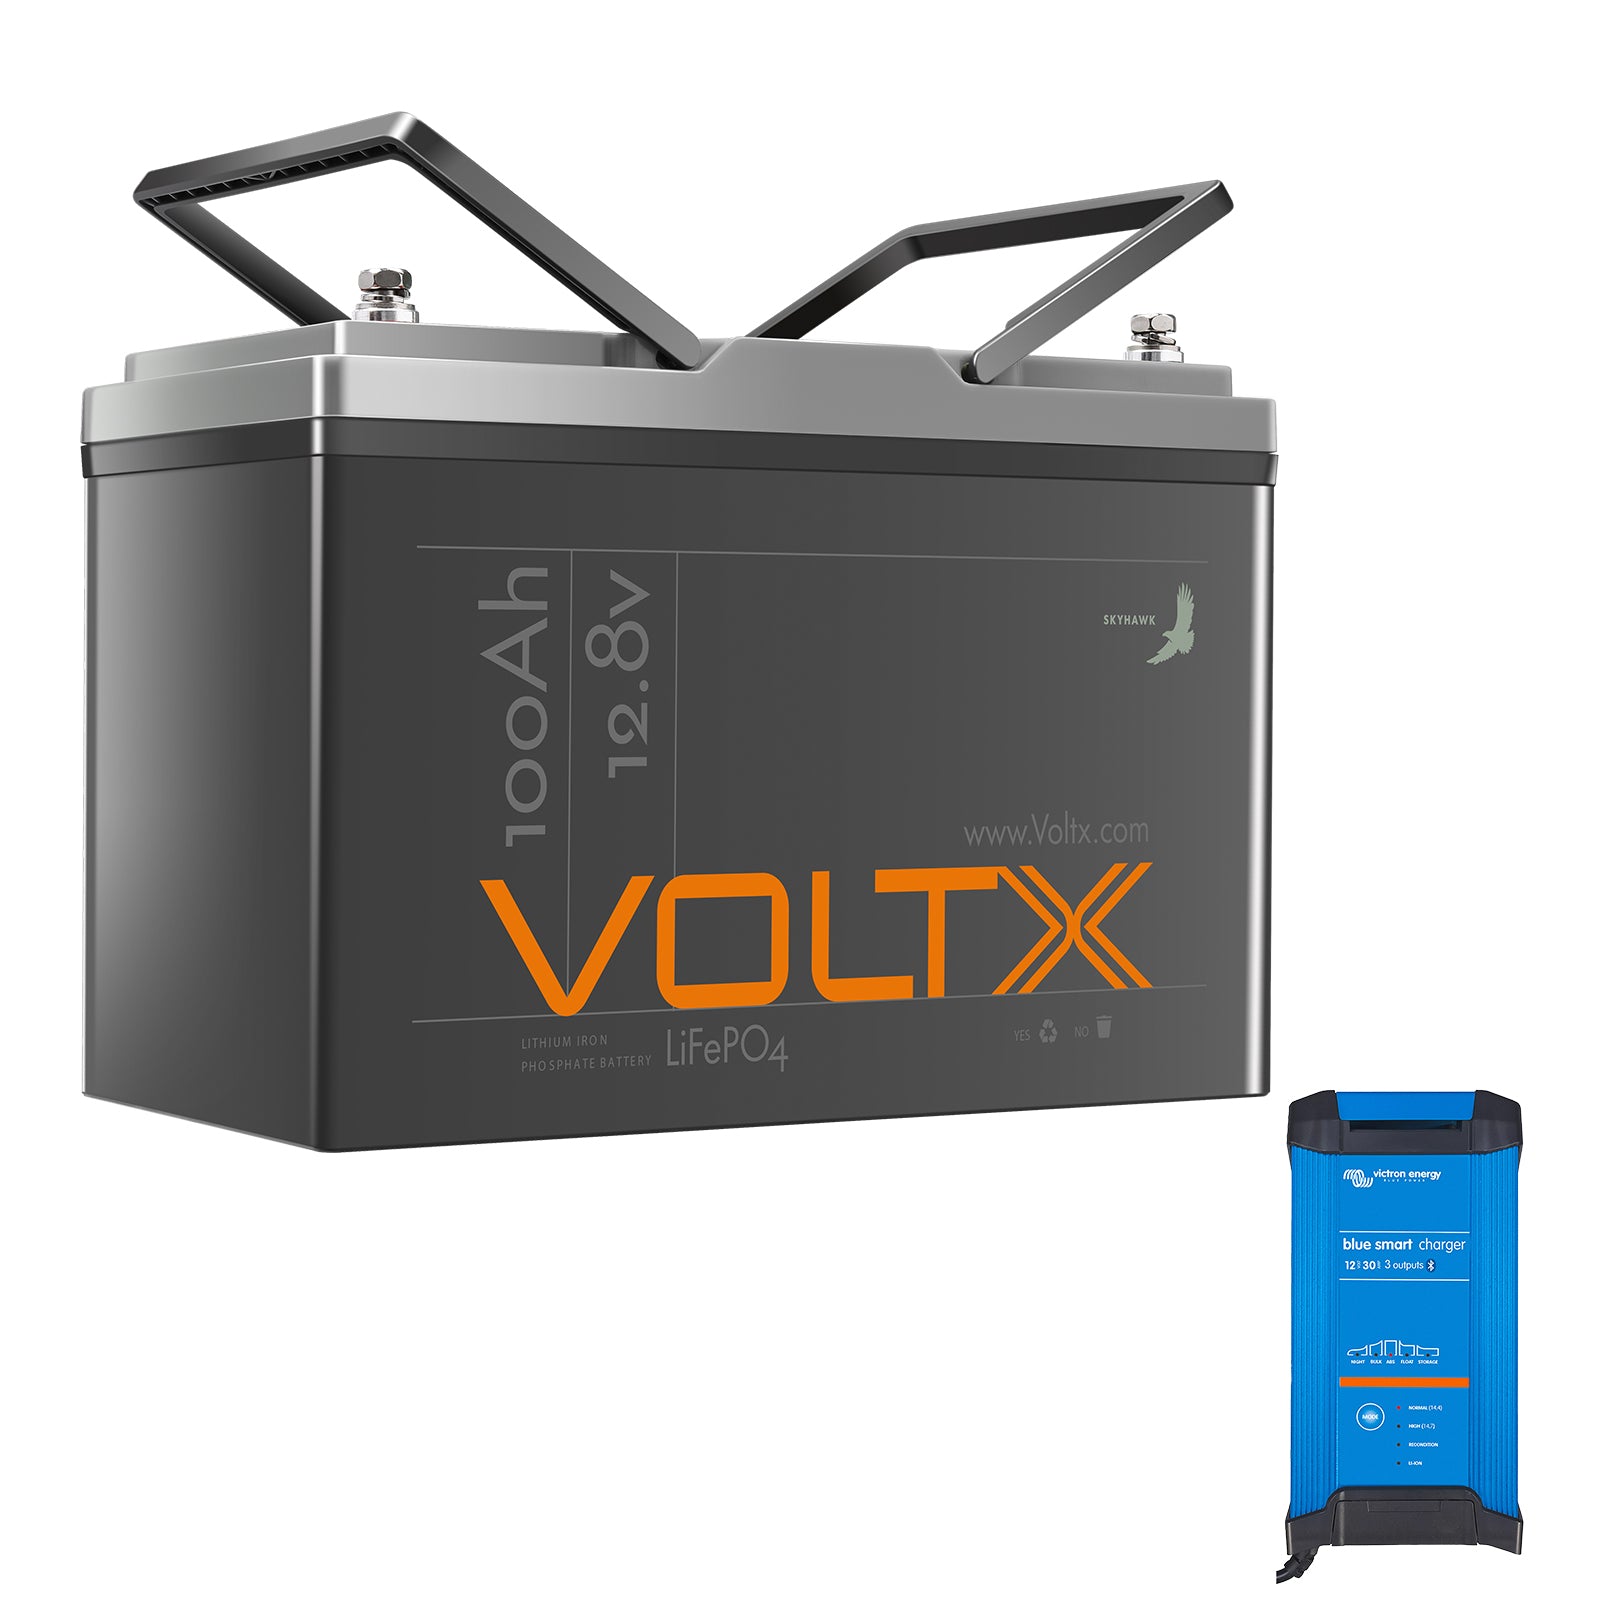 VoltX 12V 100Ah LiFePO4 Battery + Victron Smart Charger Bundle